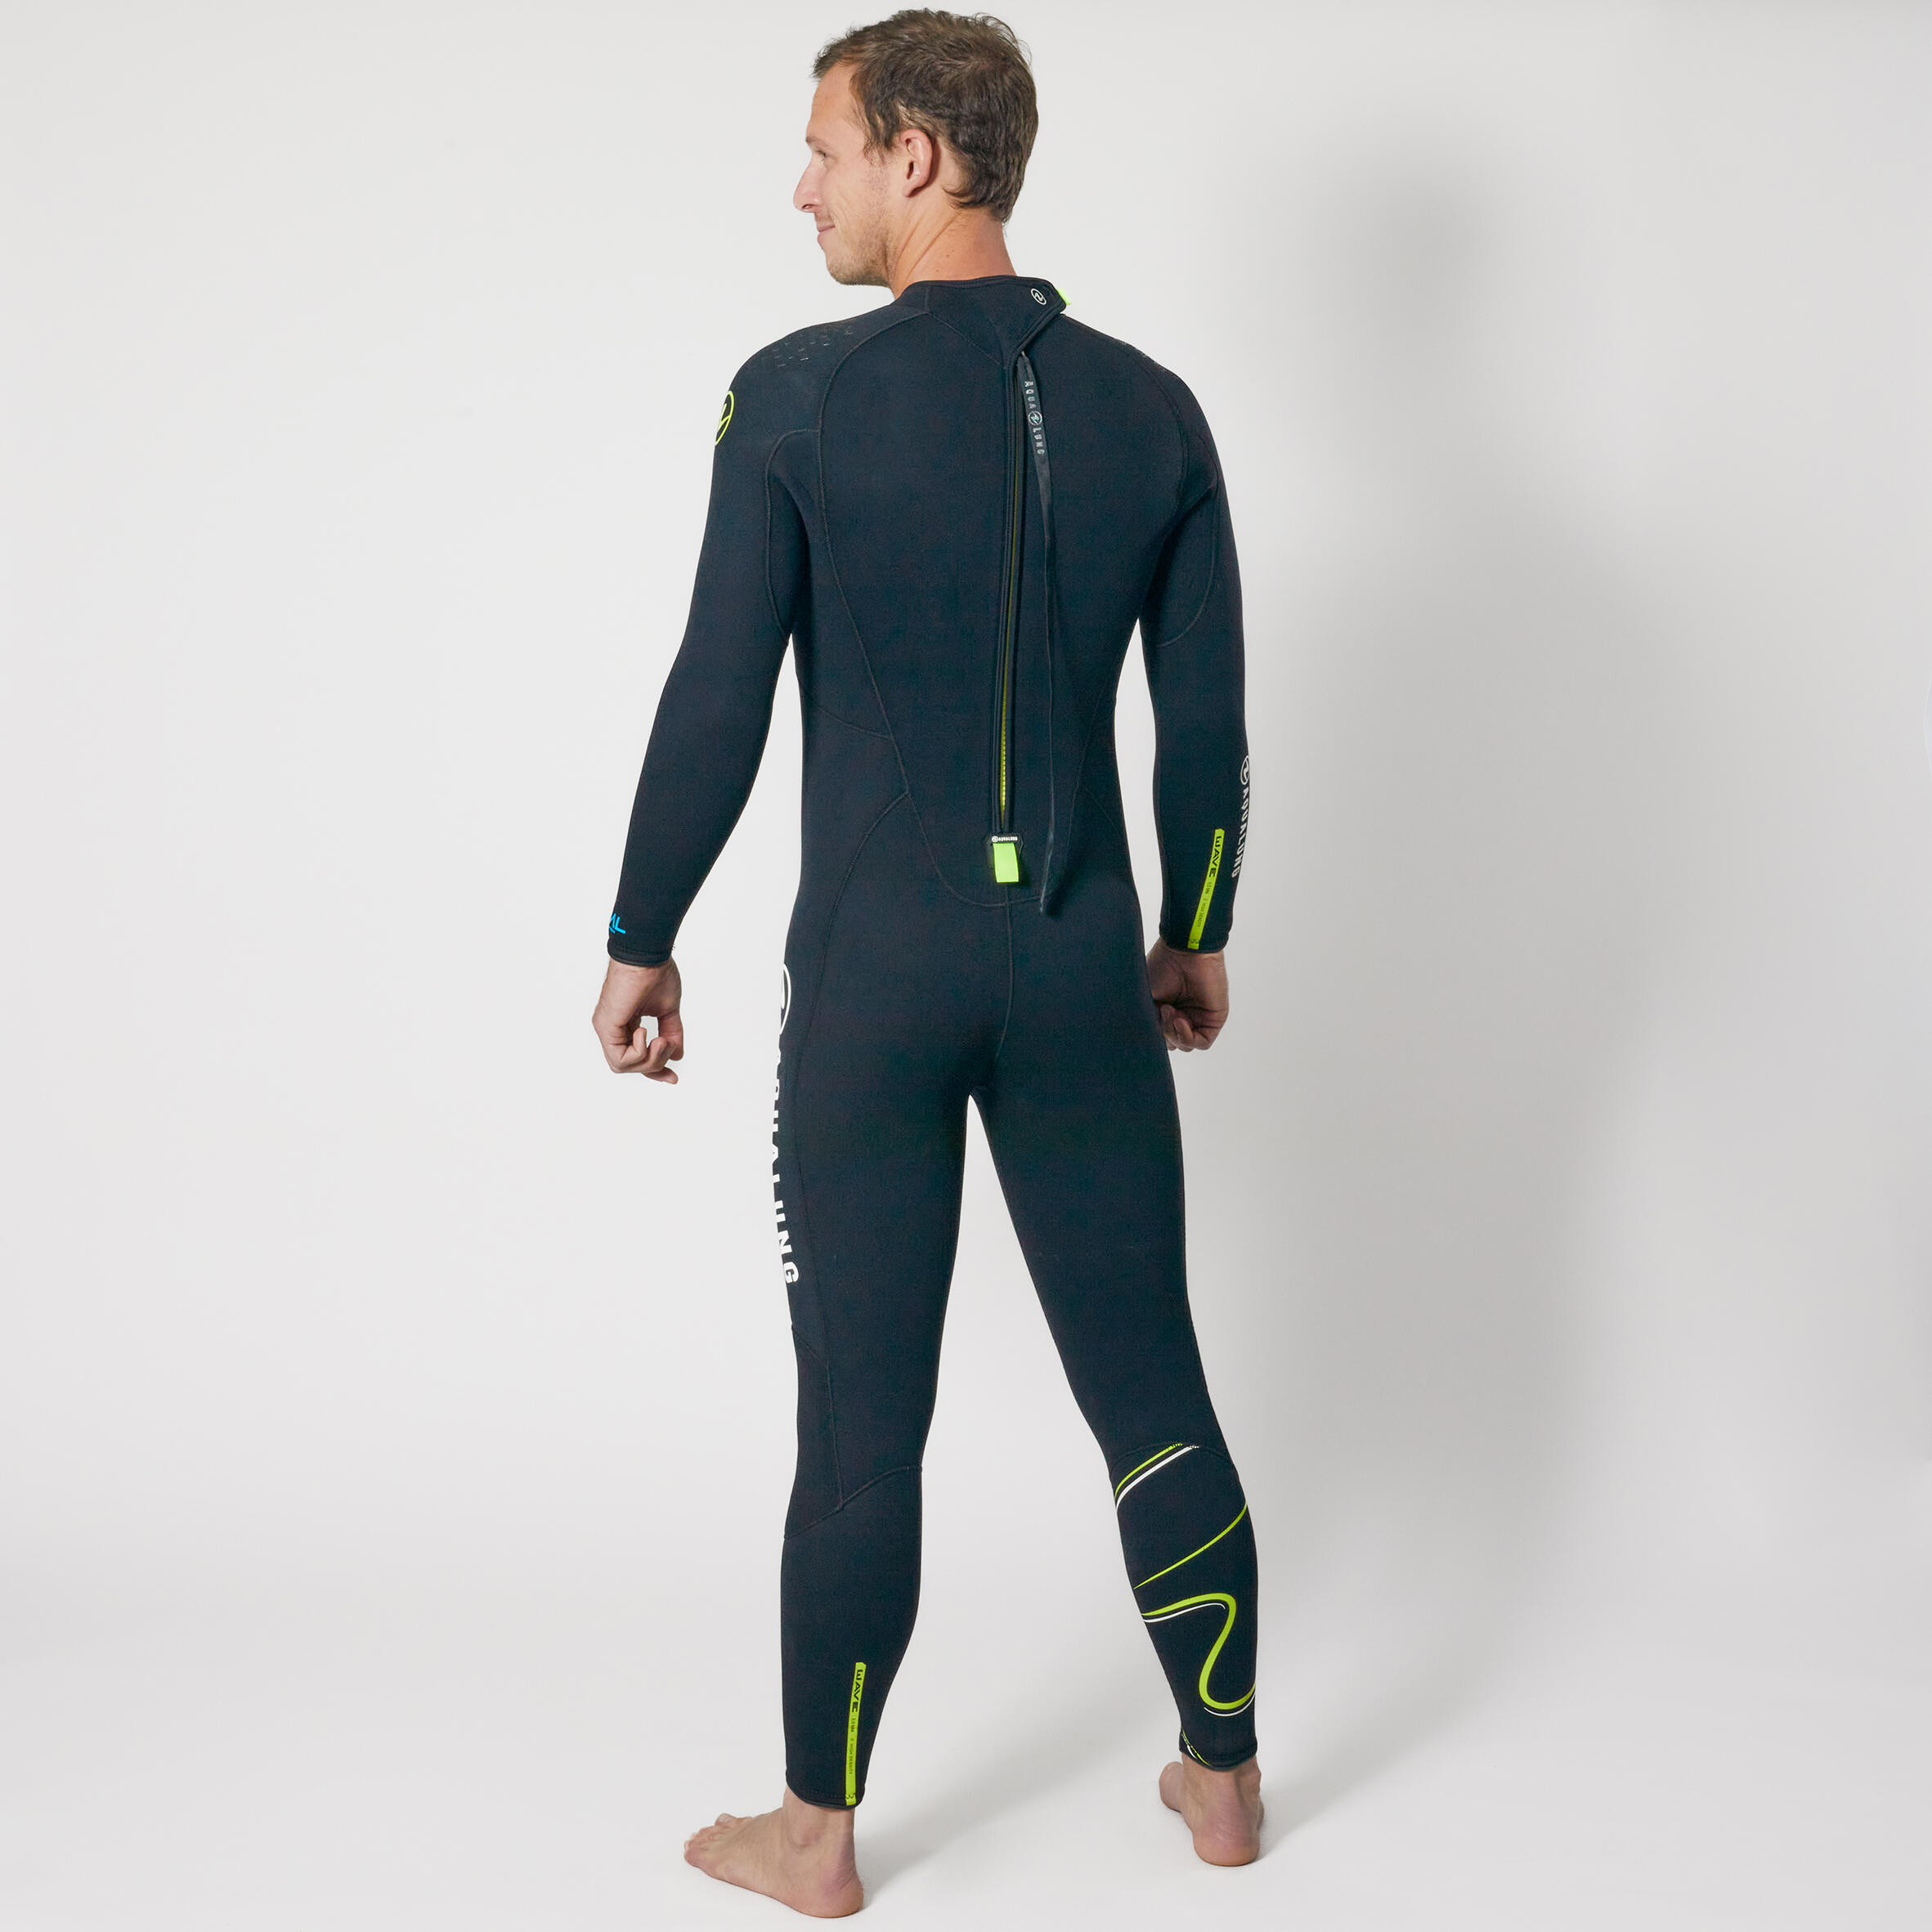 Men's diving wetsuit 5.5 mm neoprene Aqualung - WAVE Black/Yellow 3/8